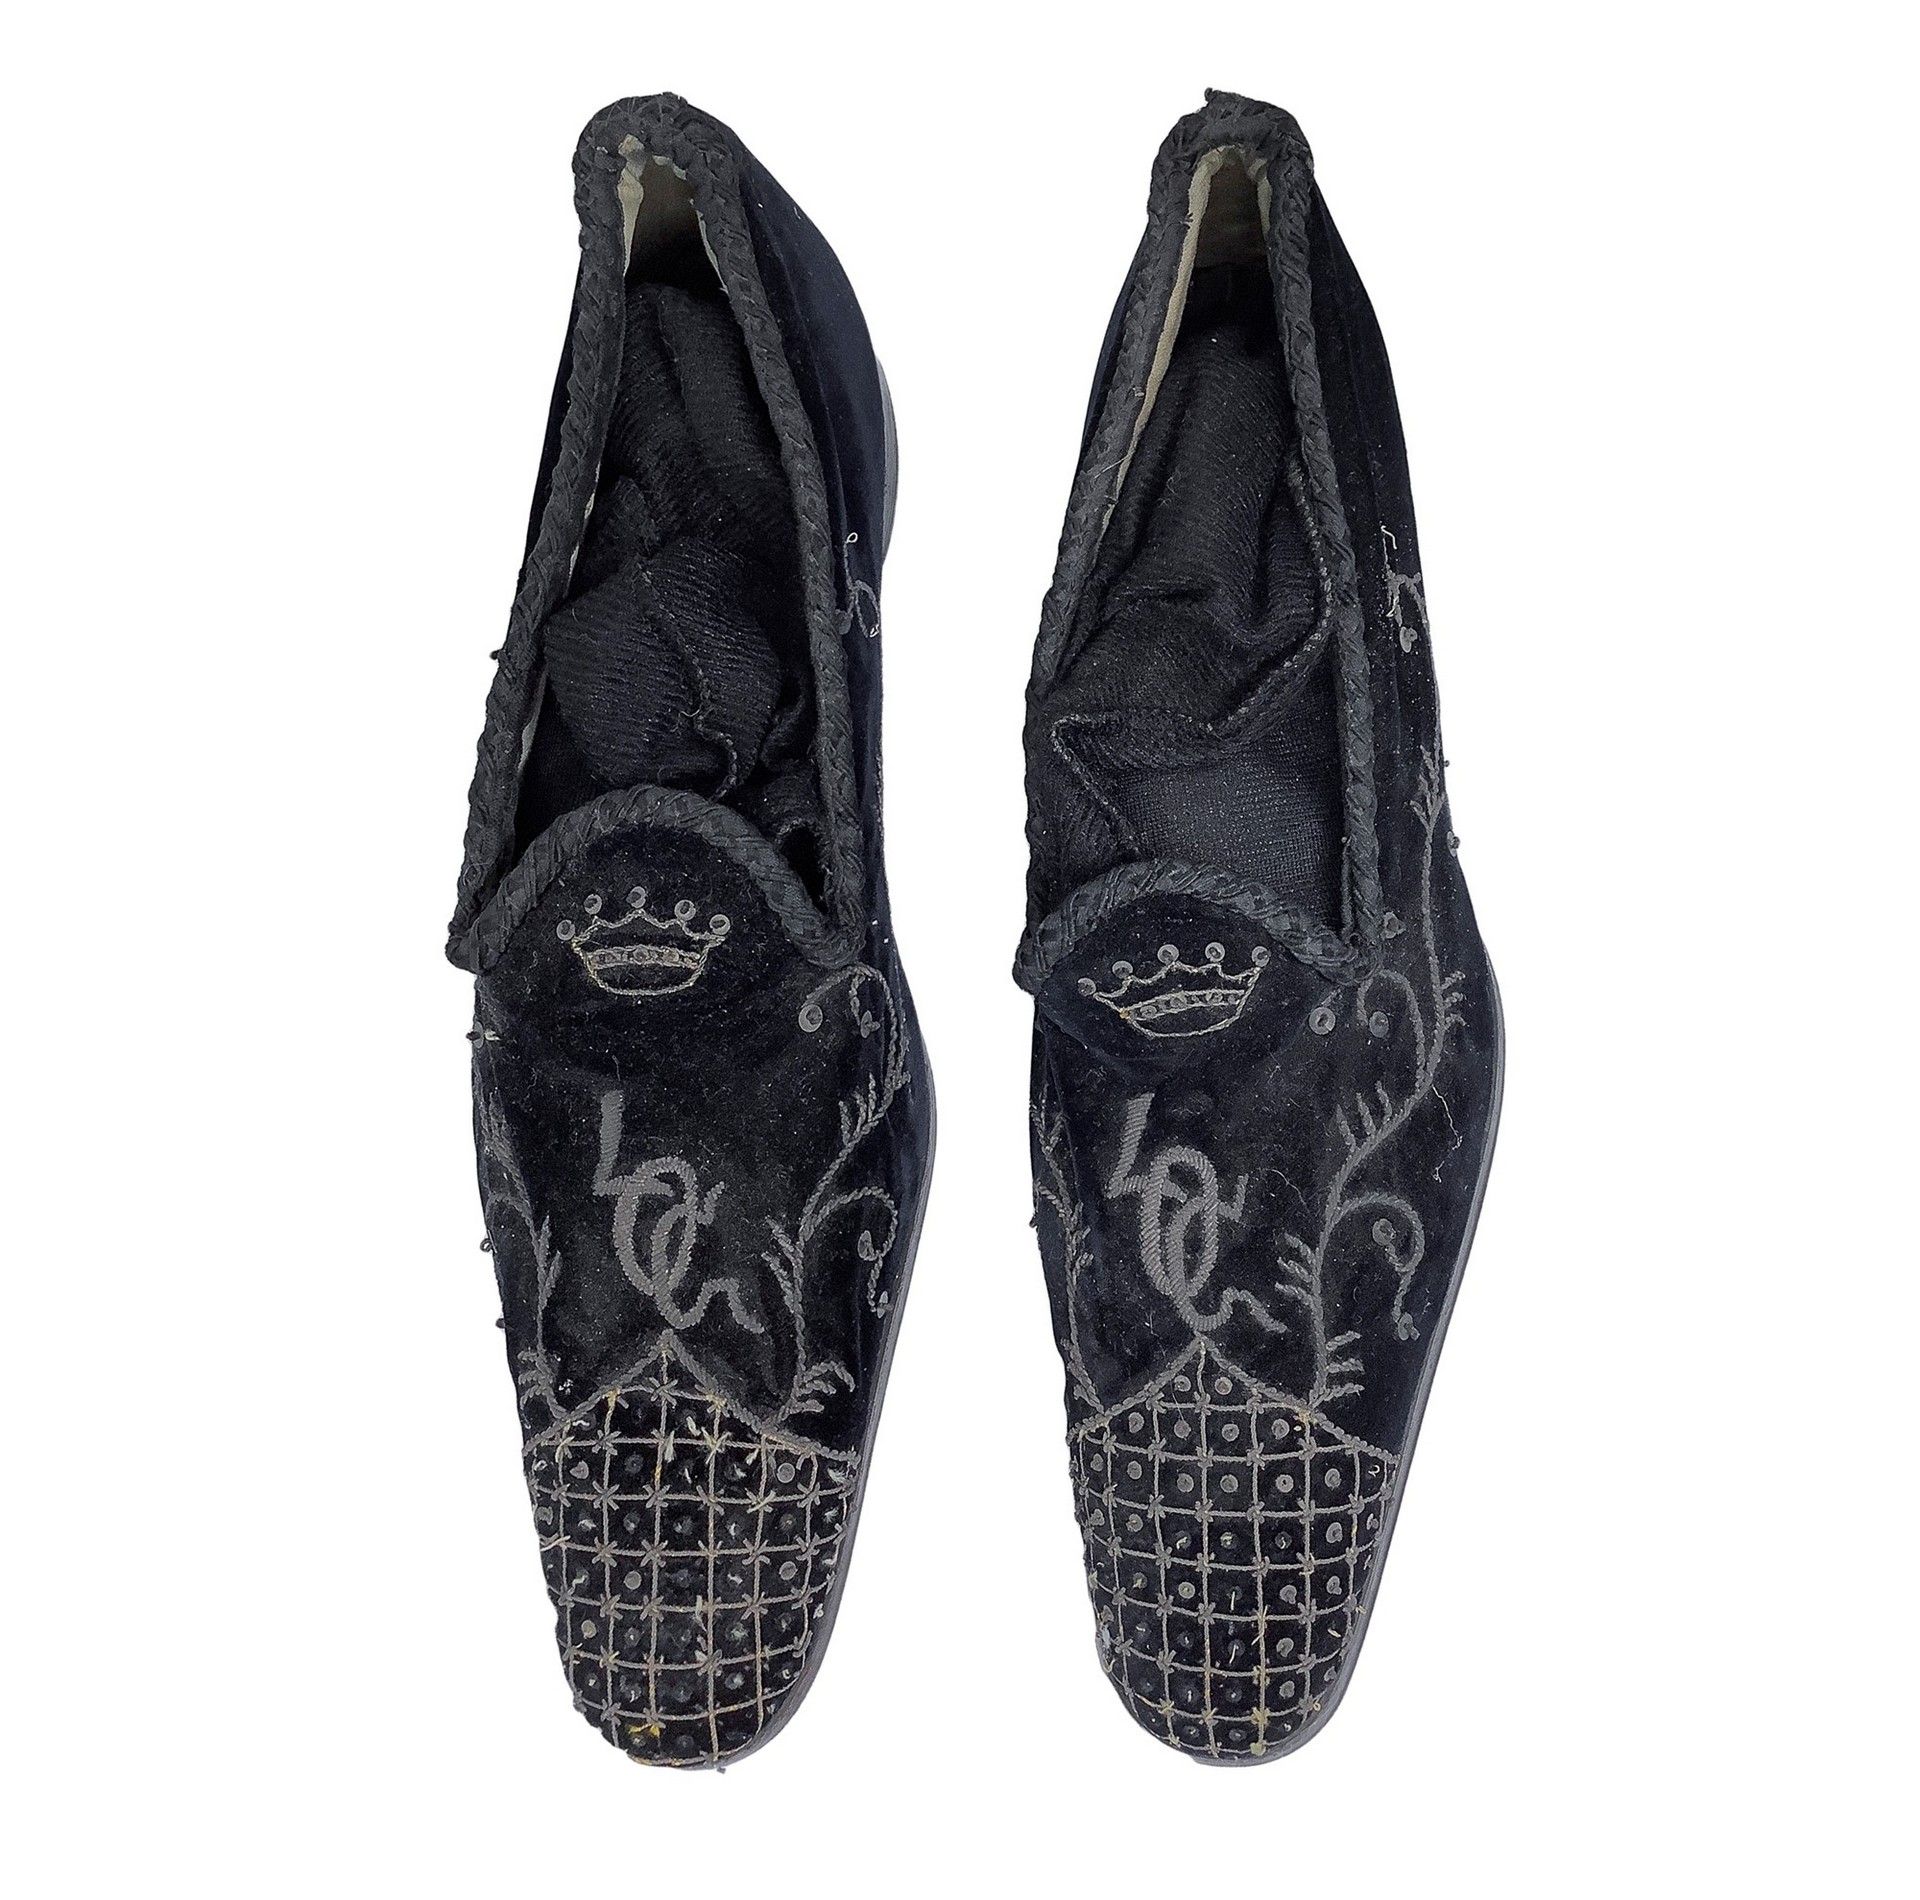 Null Scarpe pantofole d'epoca, inizio del 19° secolo Scarpe nobili ricamate